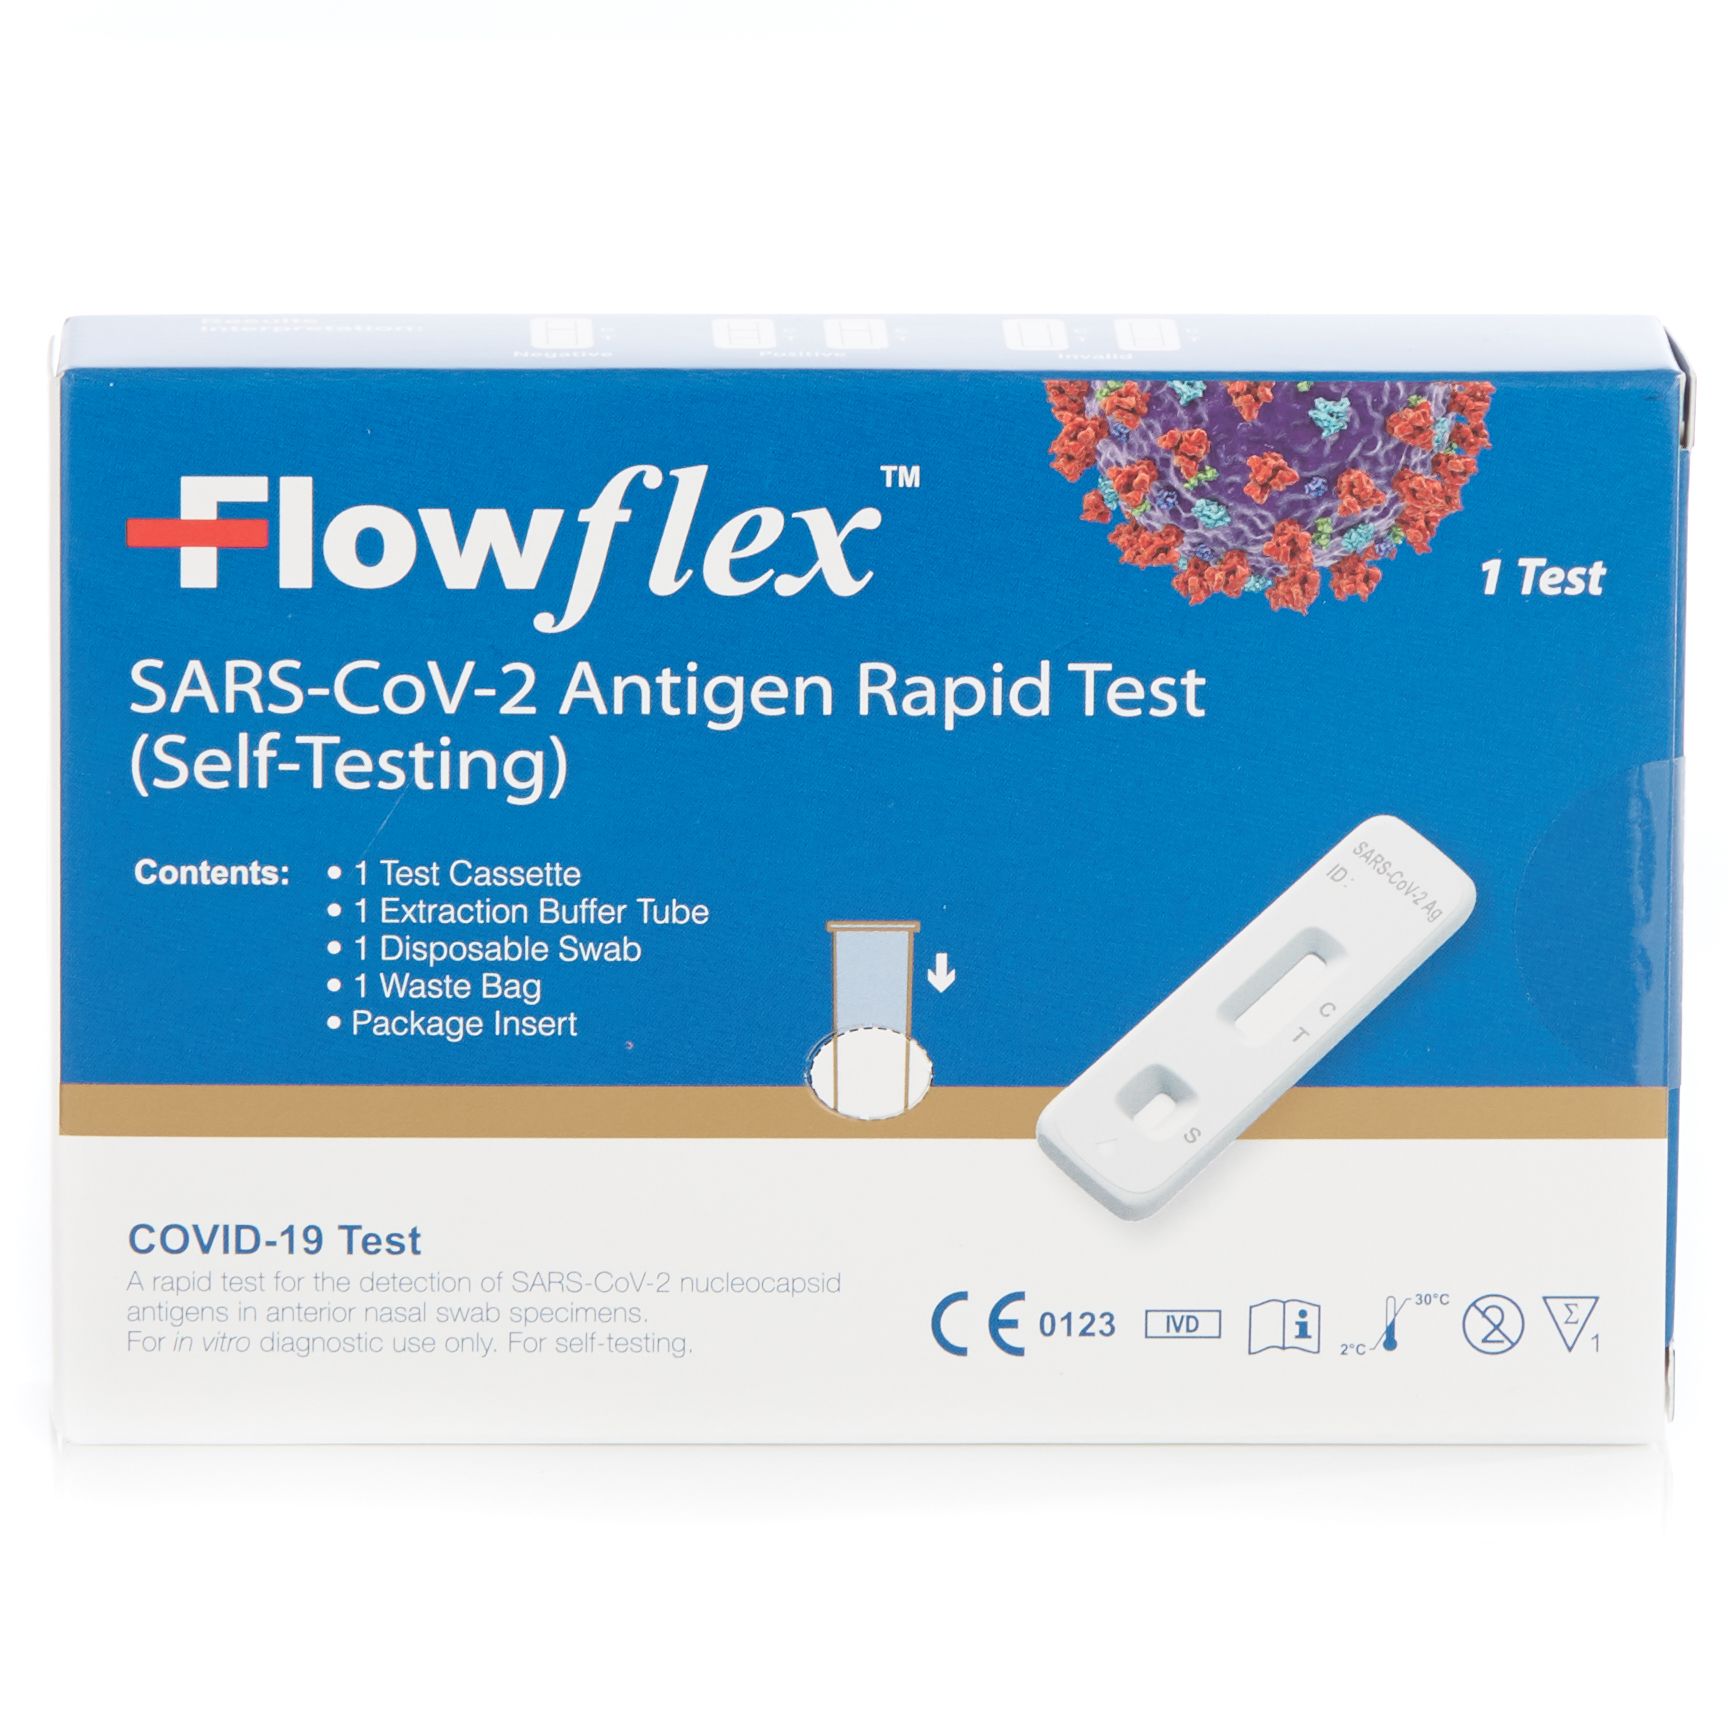 FlowFlex Rapid Antigen Test Kits For Covid-19 (Self-Testing)